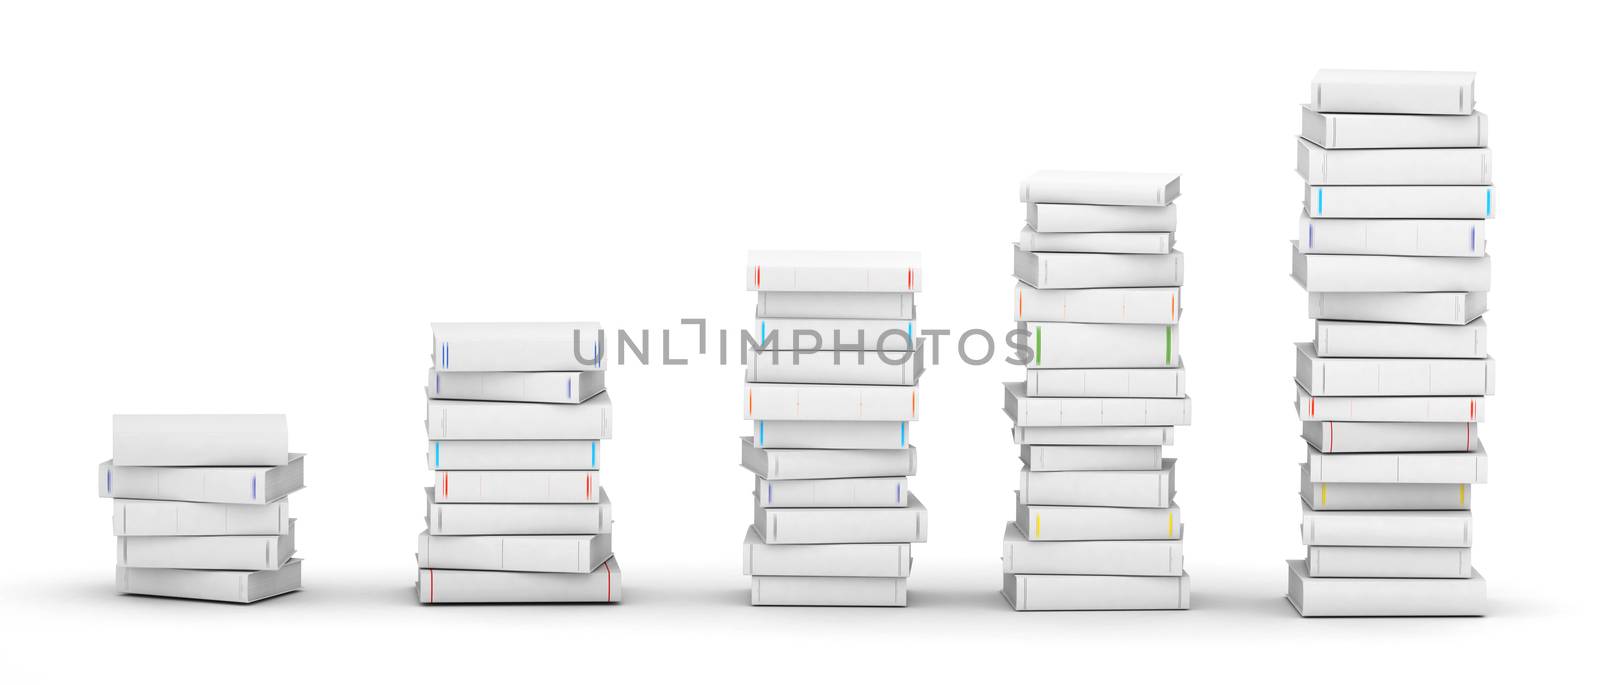 Several white blank books stacks